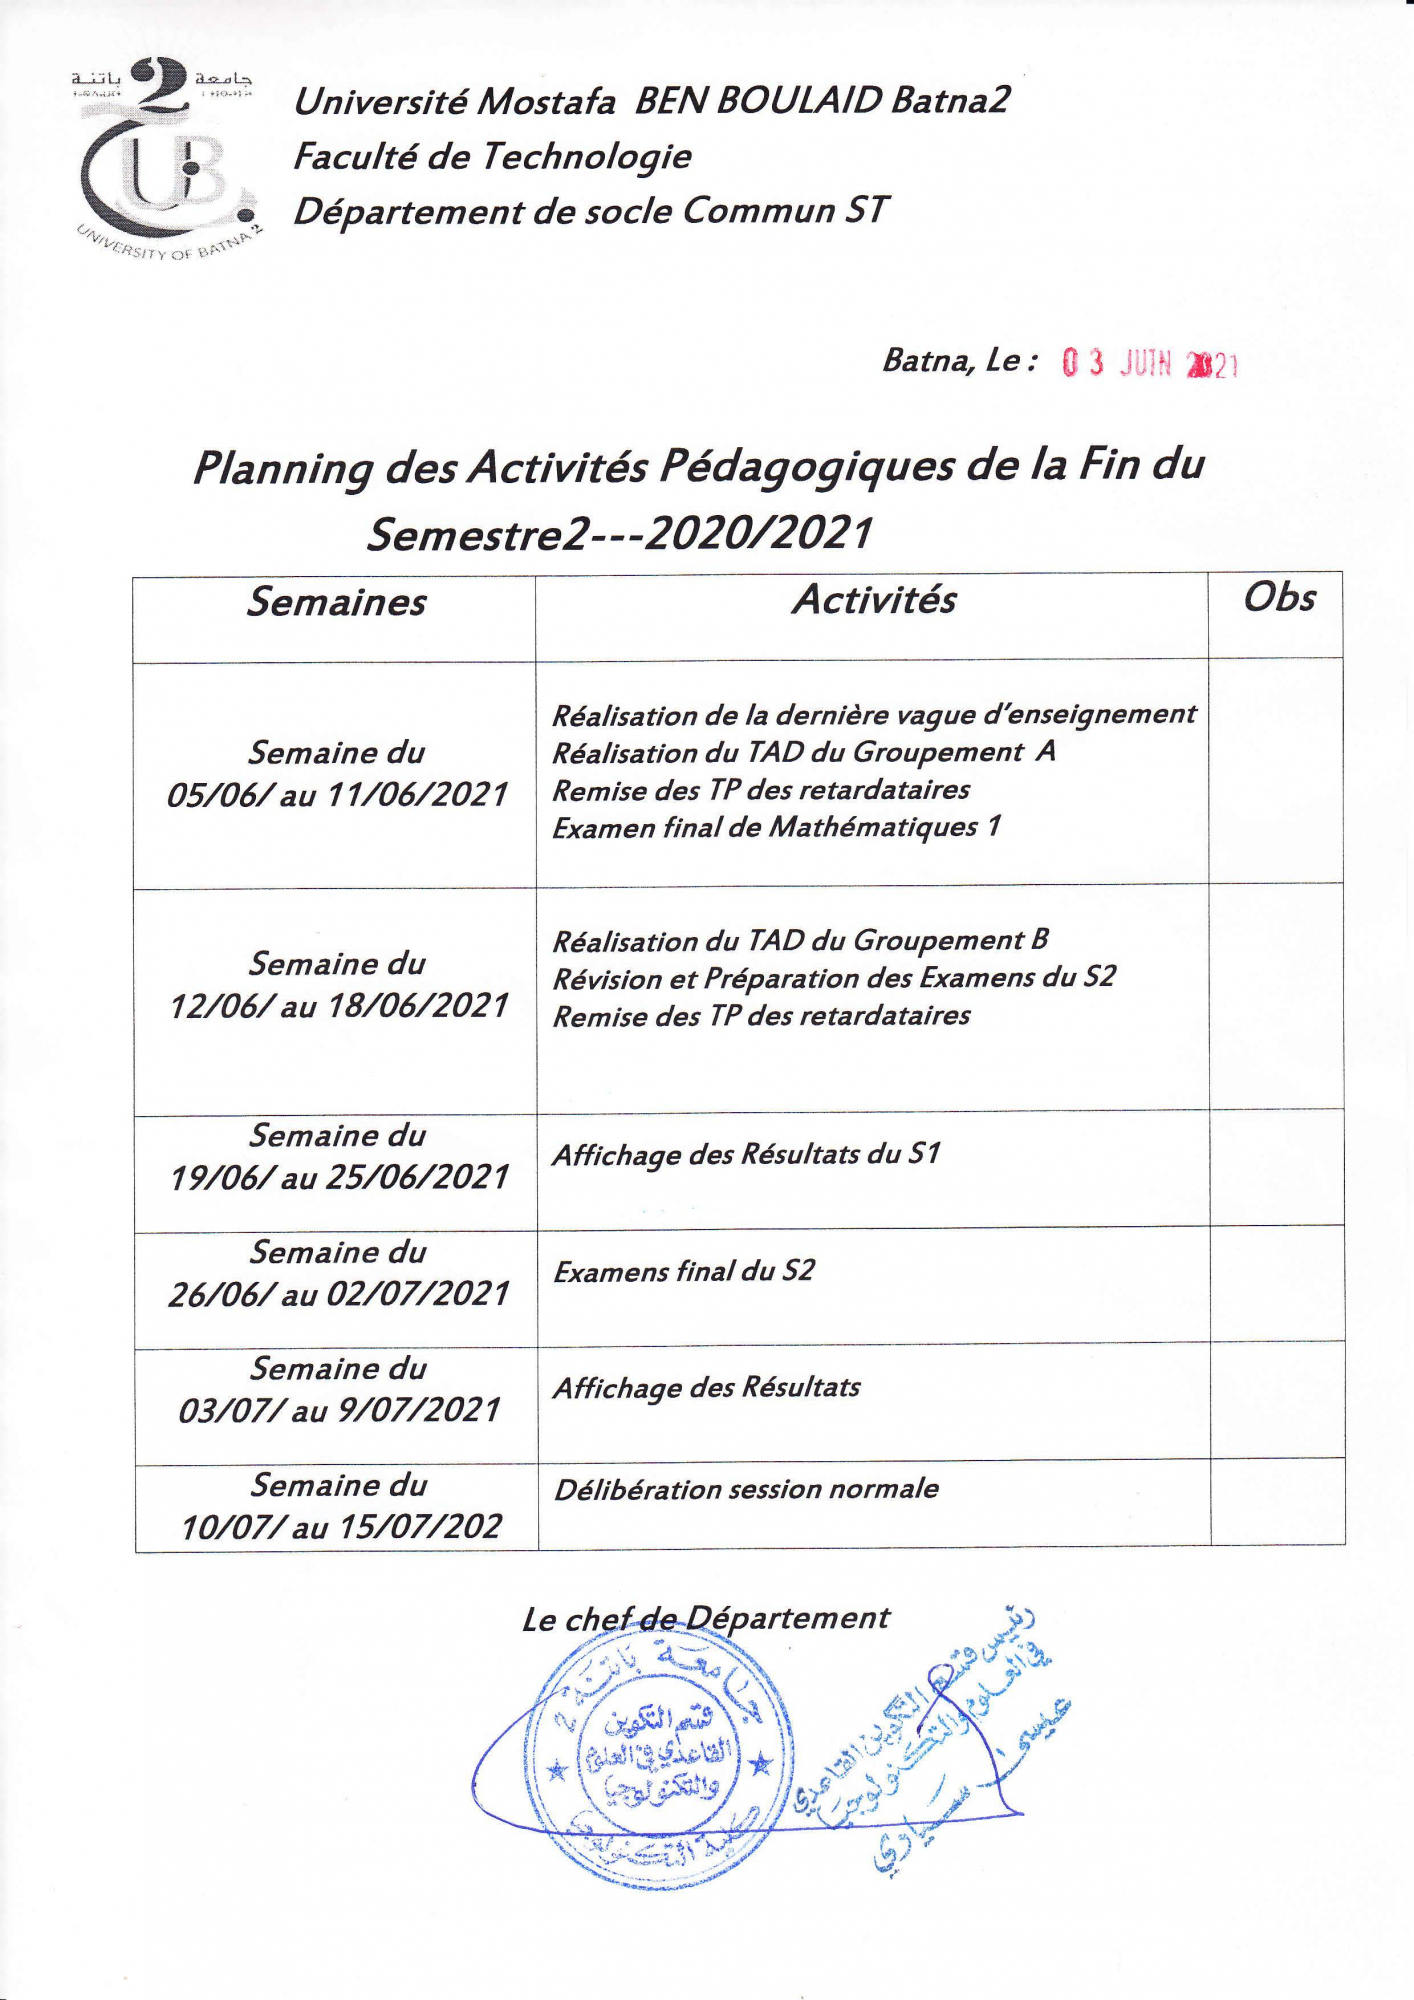 planning_des_activites_pedagogiques_fin_du_s2